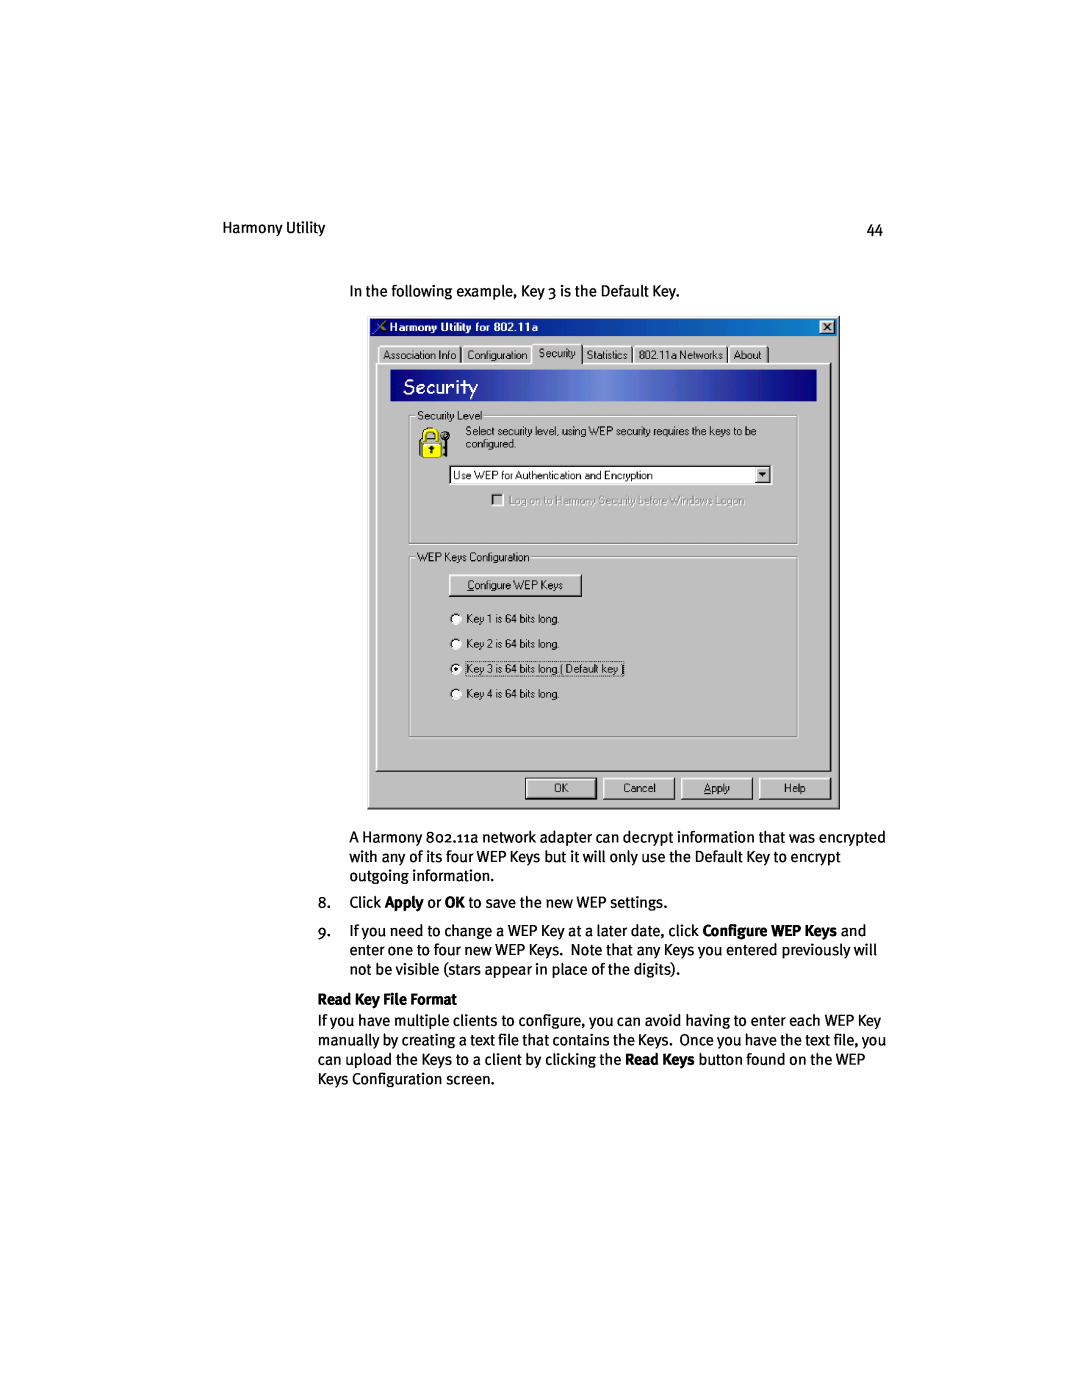 Harmony House 802.11a manual Read Key File Format 